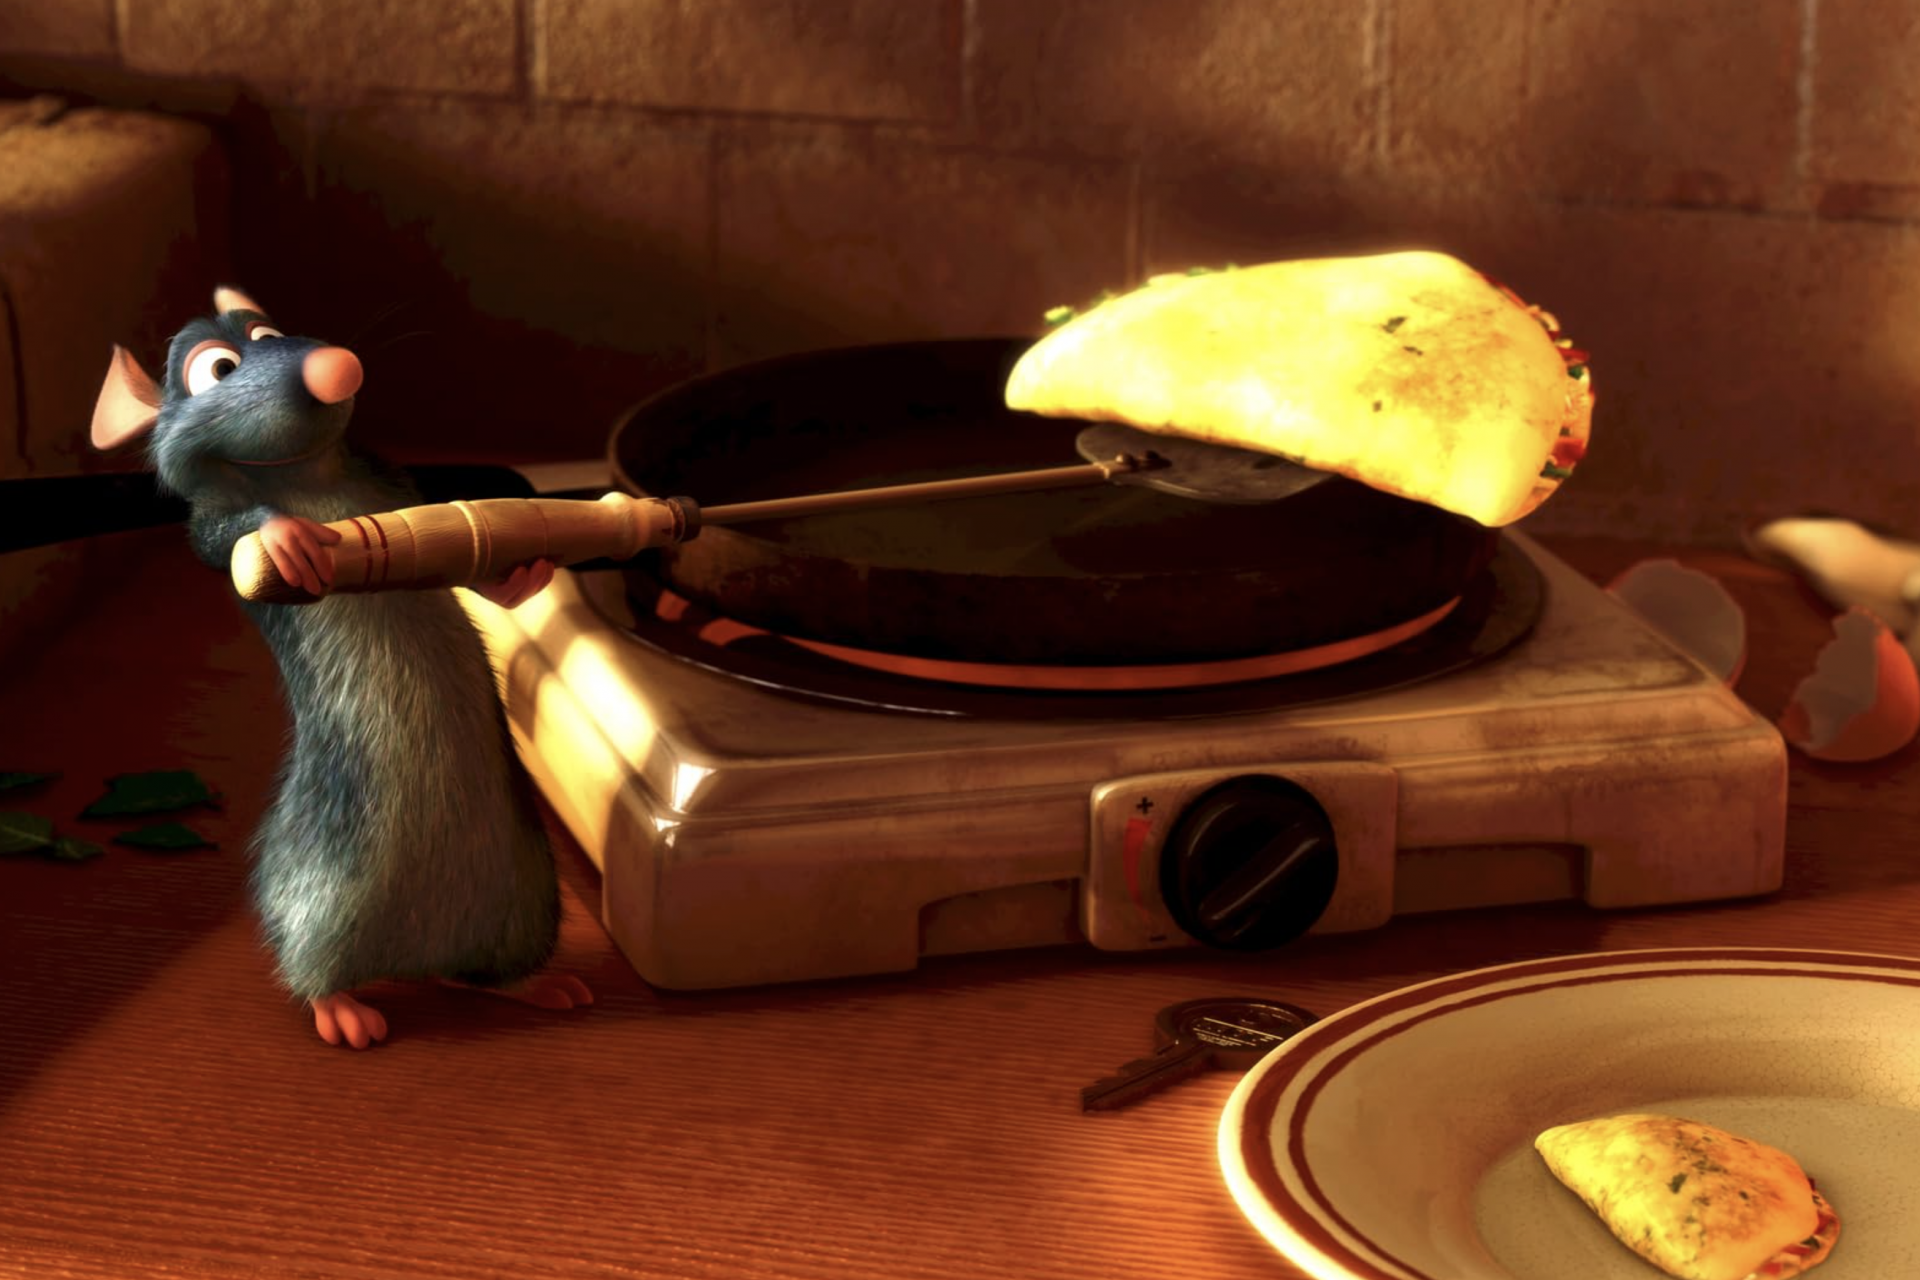 Ratatouille (2007)